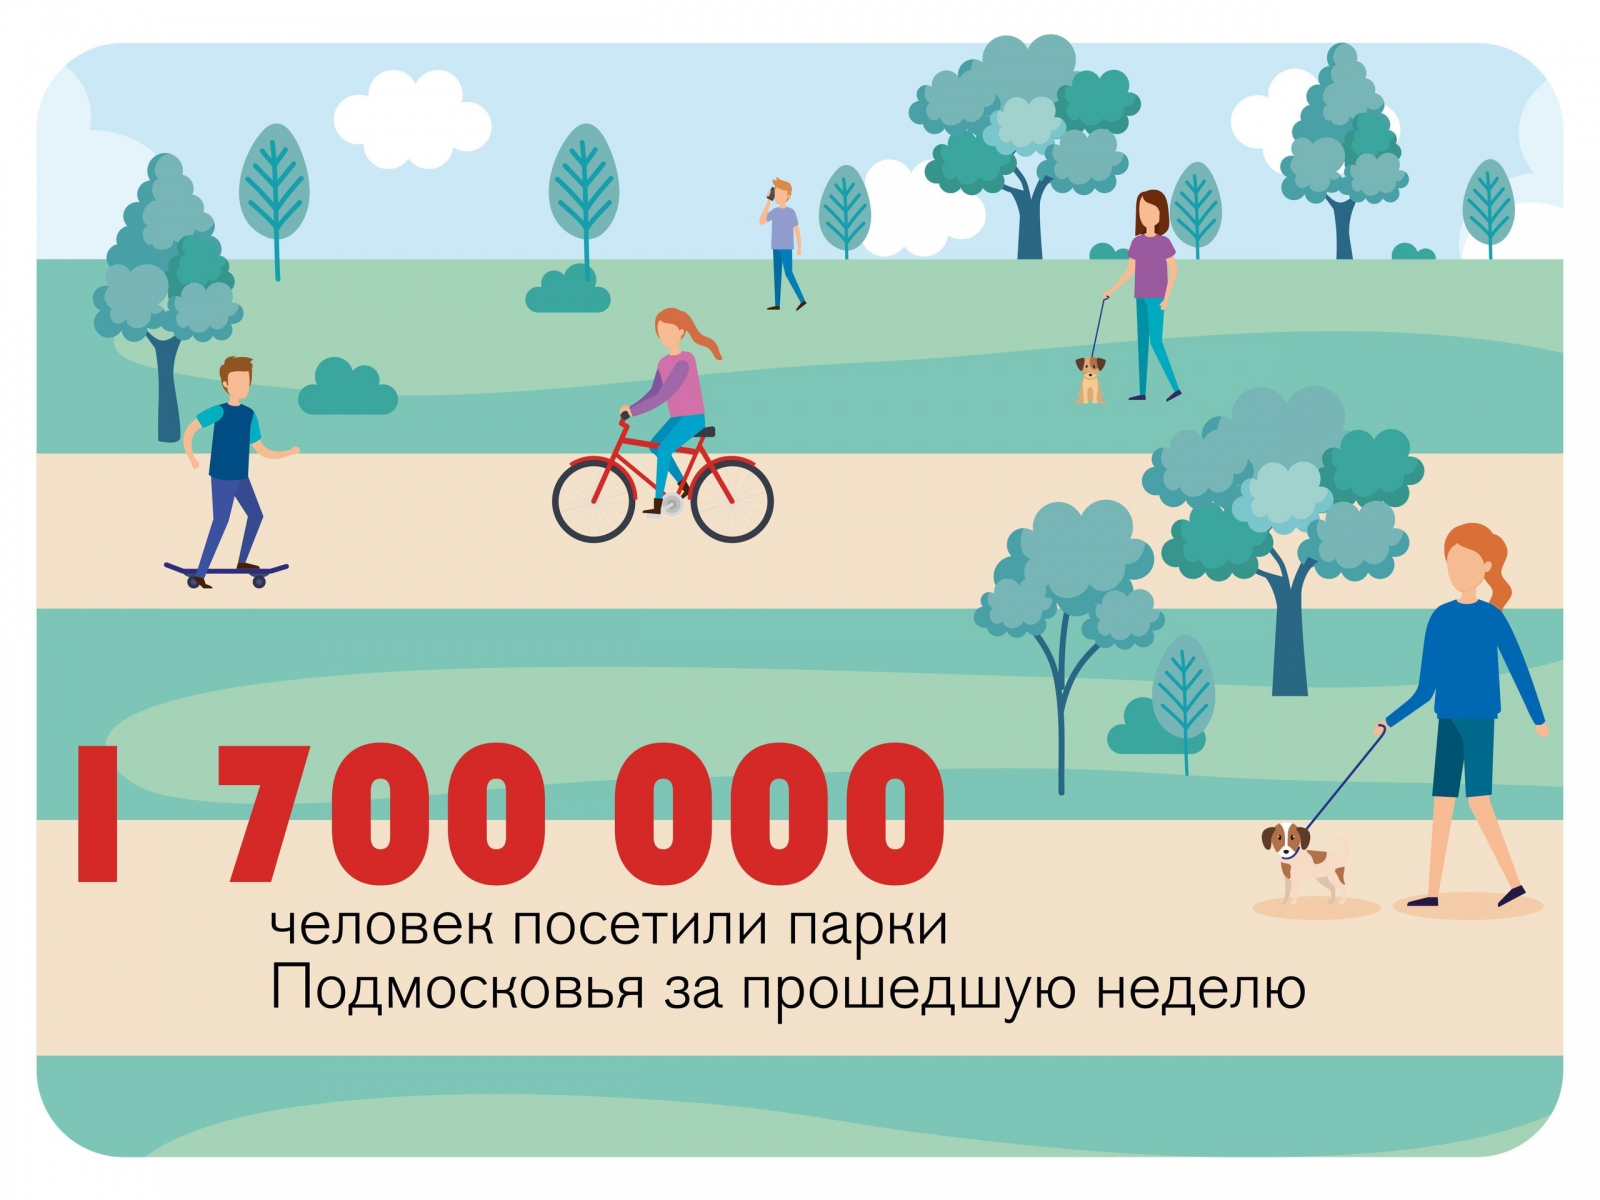 1,7 млн человек побывали в парках Подмосковья